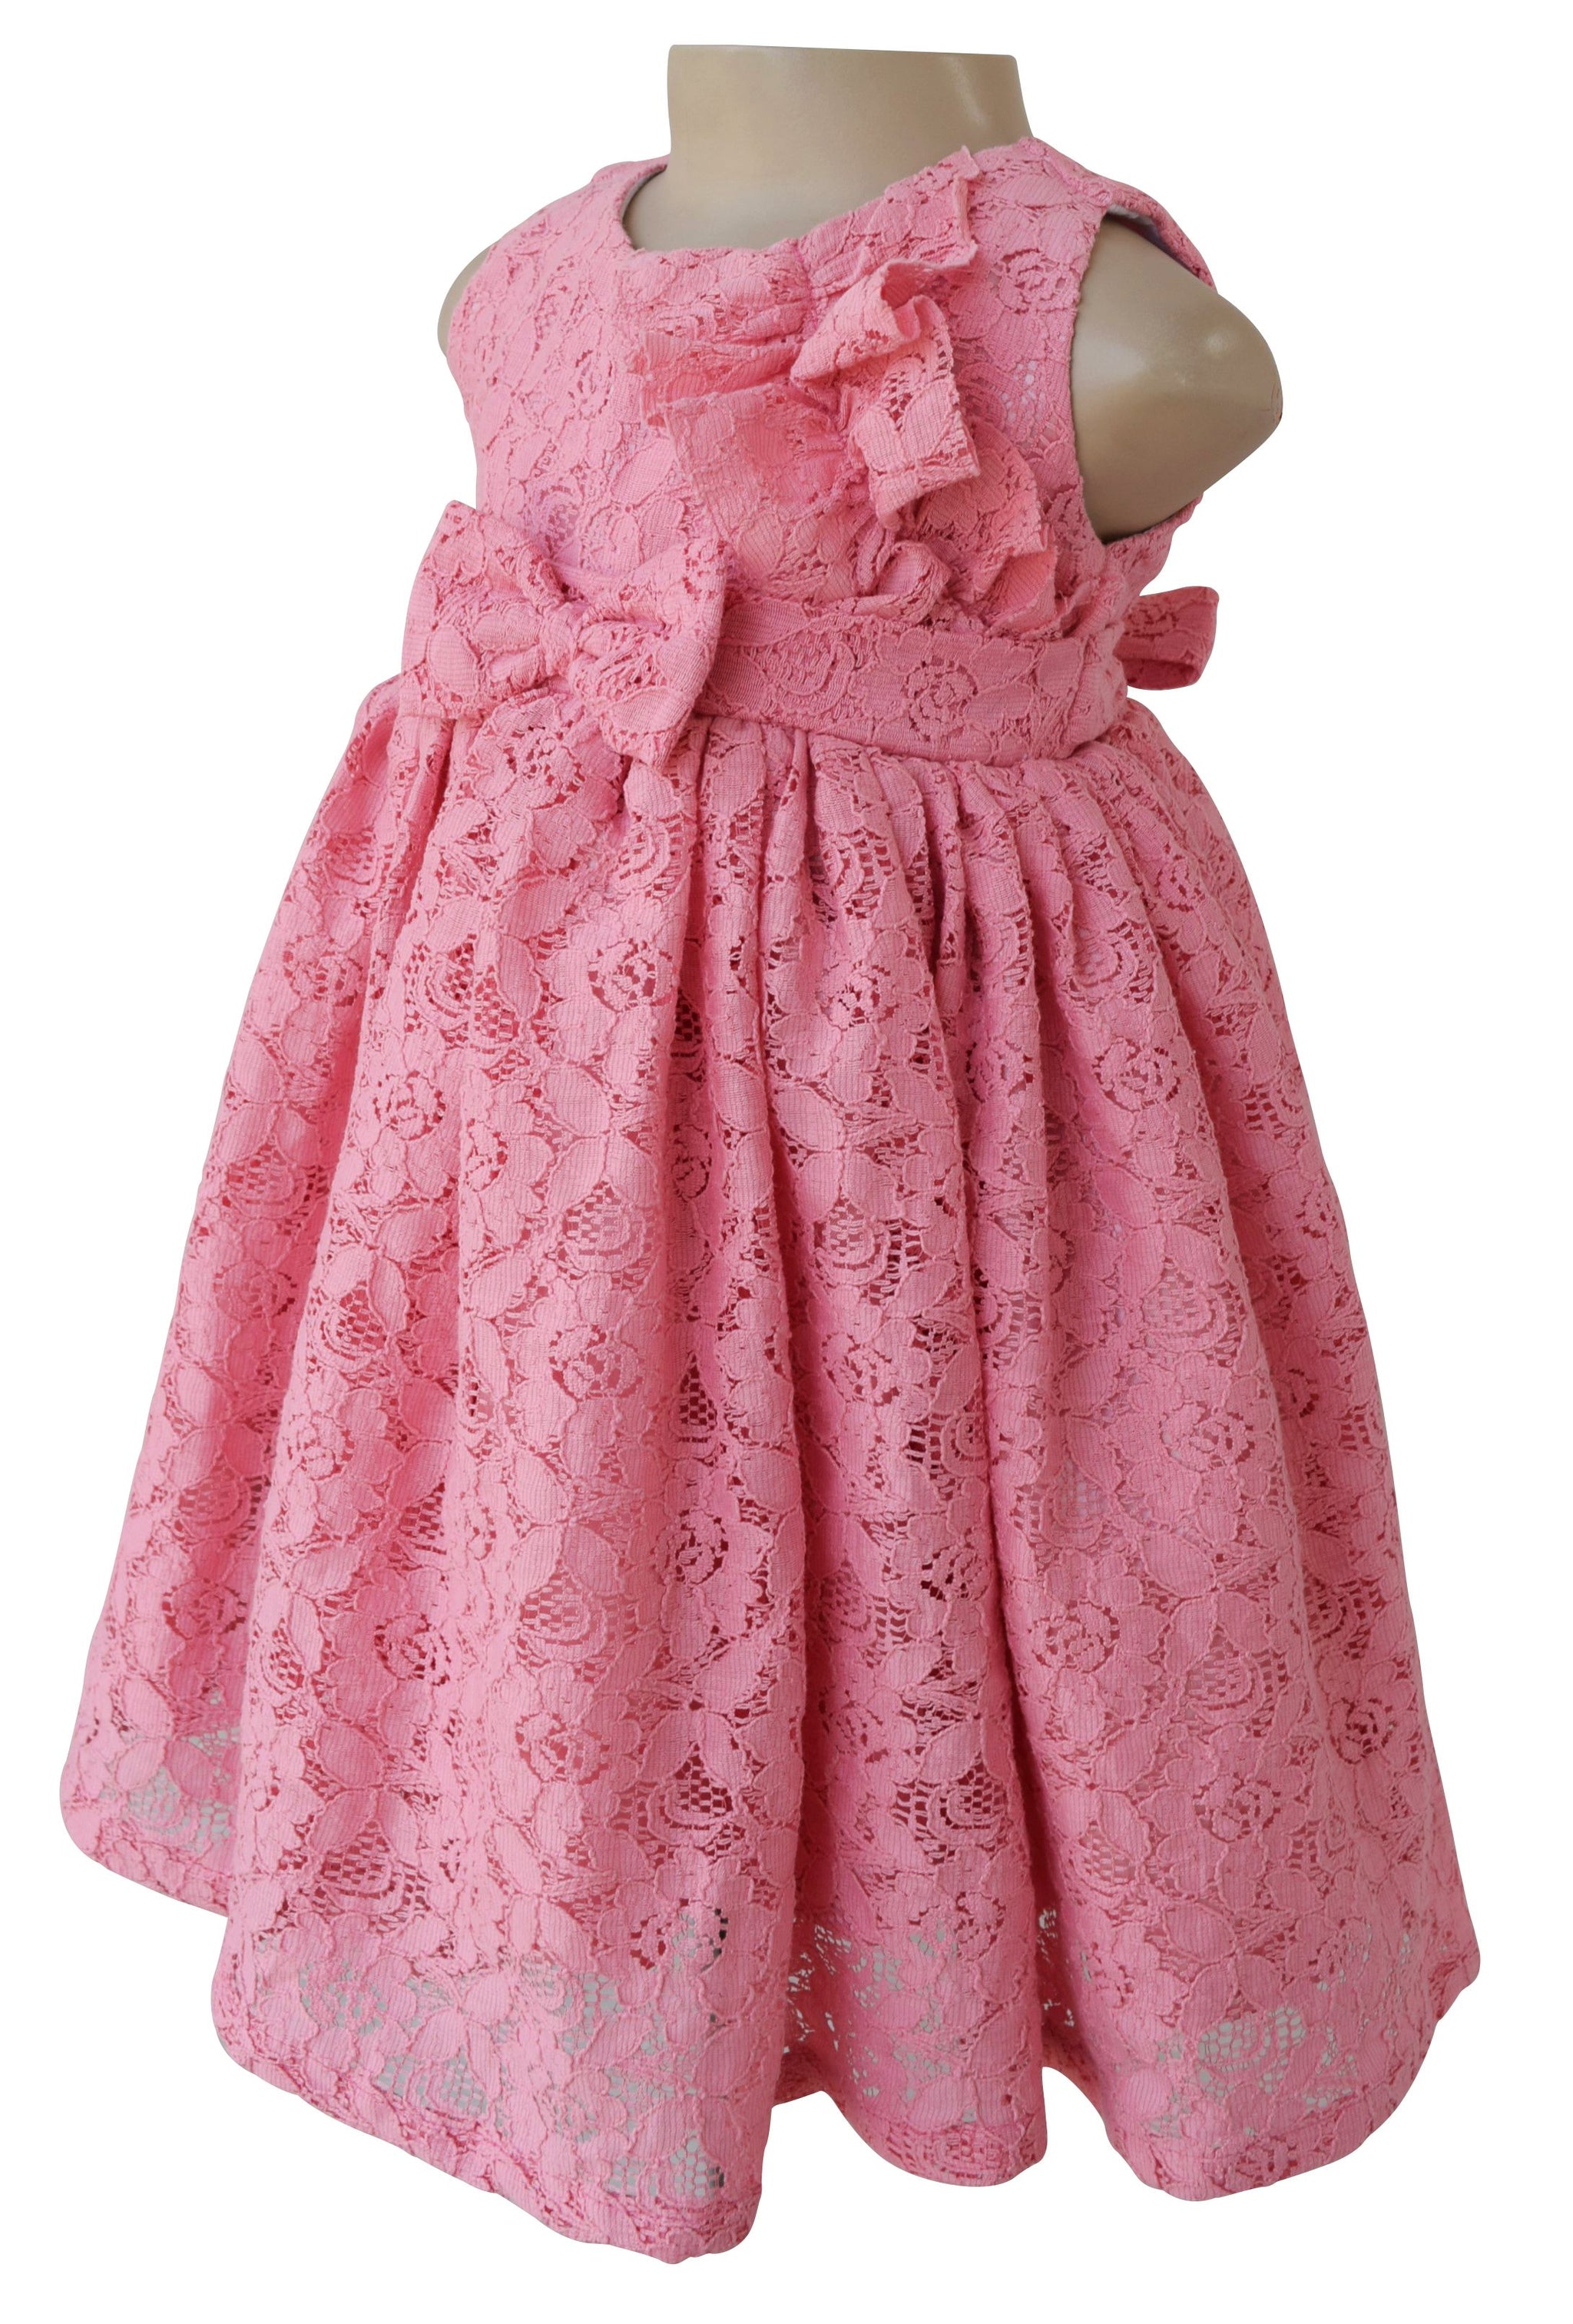 Dress for kid girls_Faye Blush Lace Kids Dress - faye